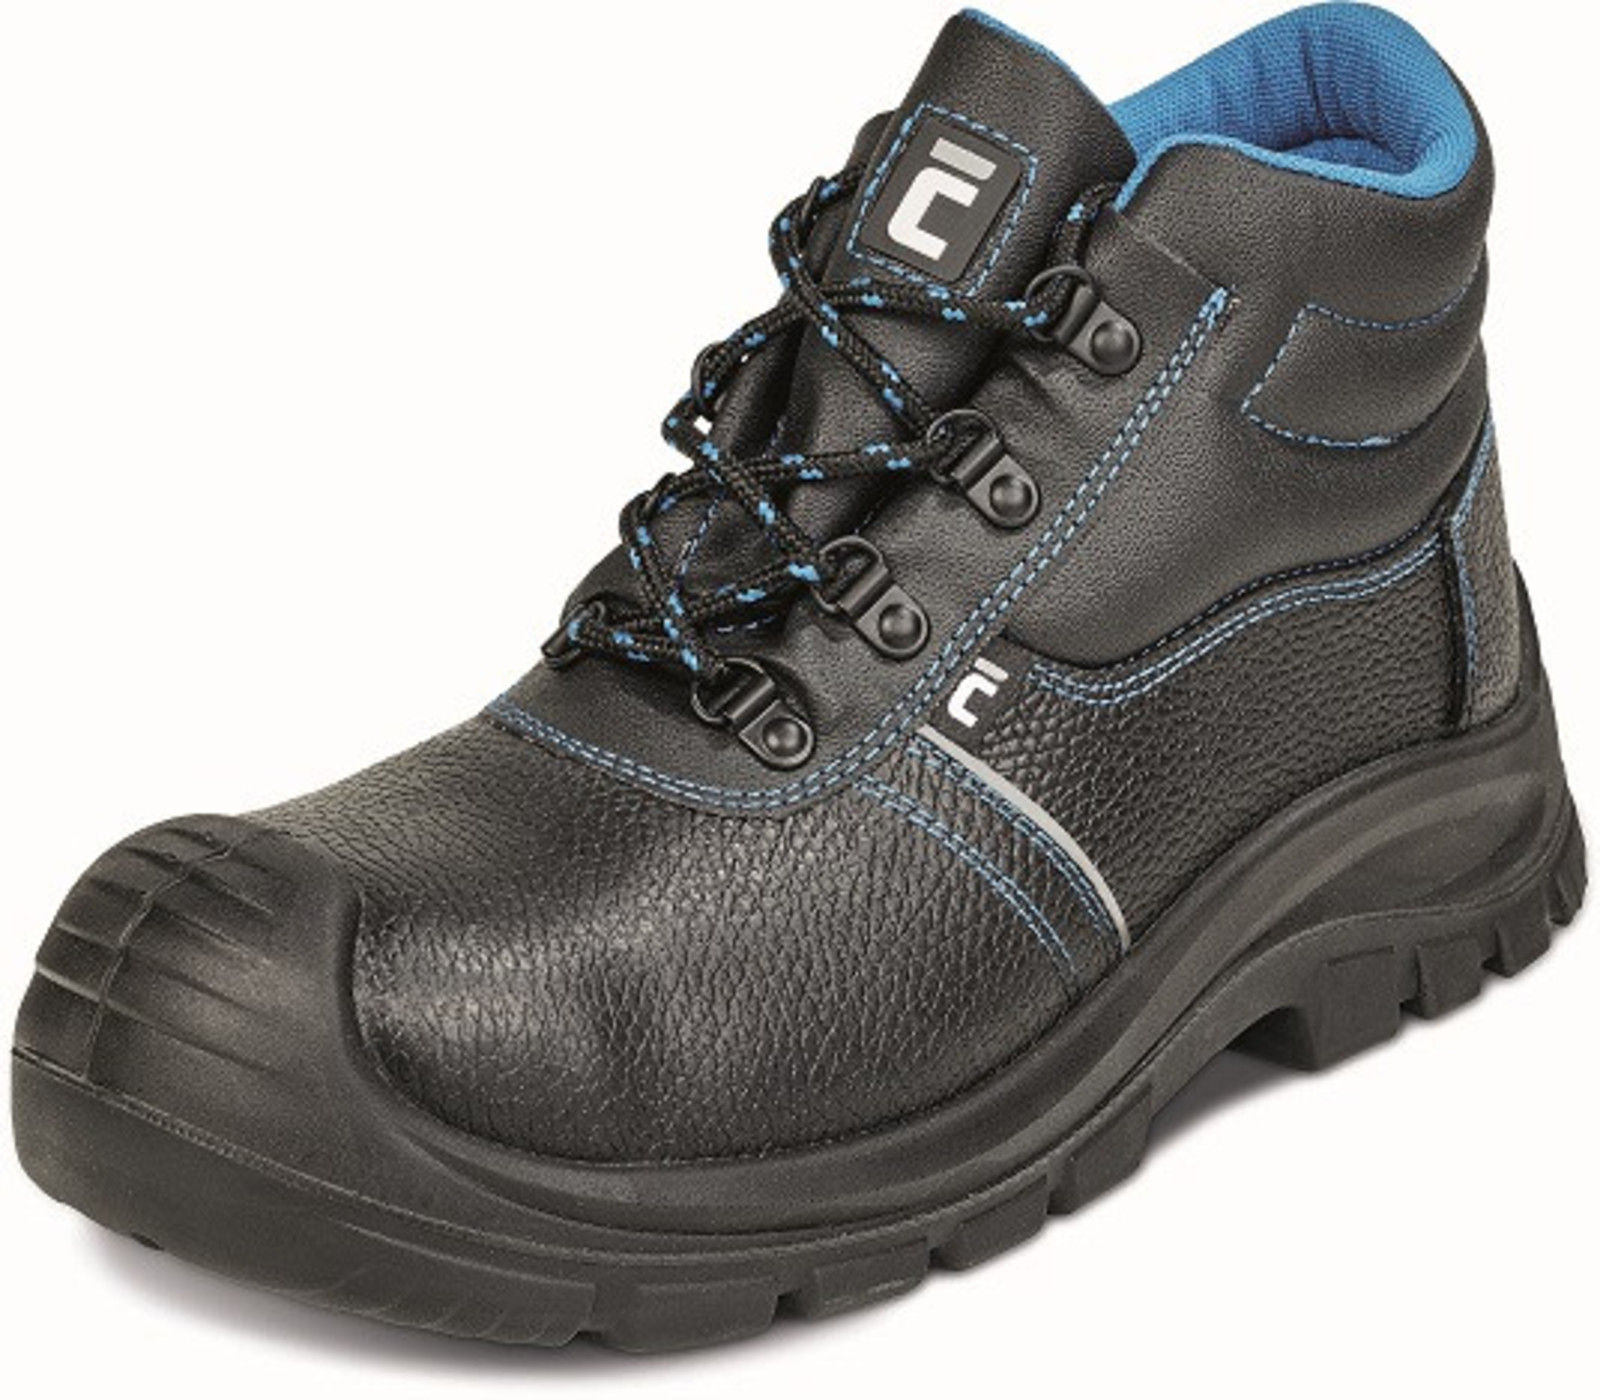 Bezpečnostná obuv Raven XT S1P - veľkosť: 48, farba: čierna